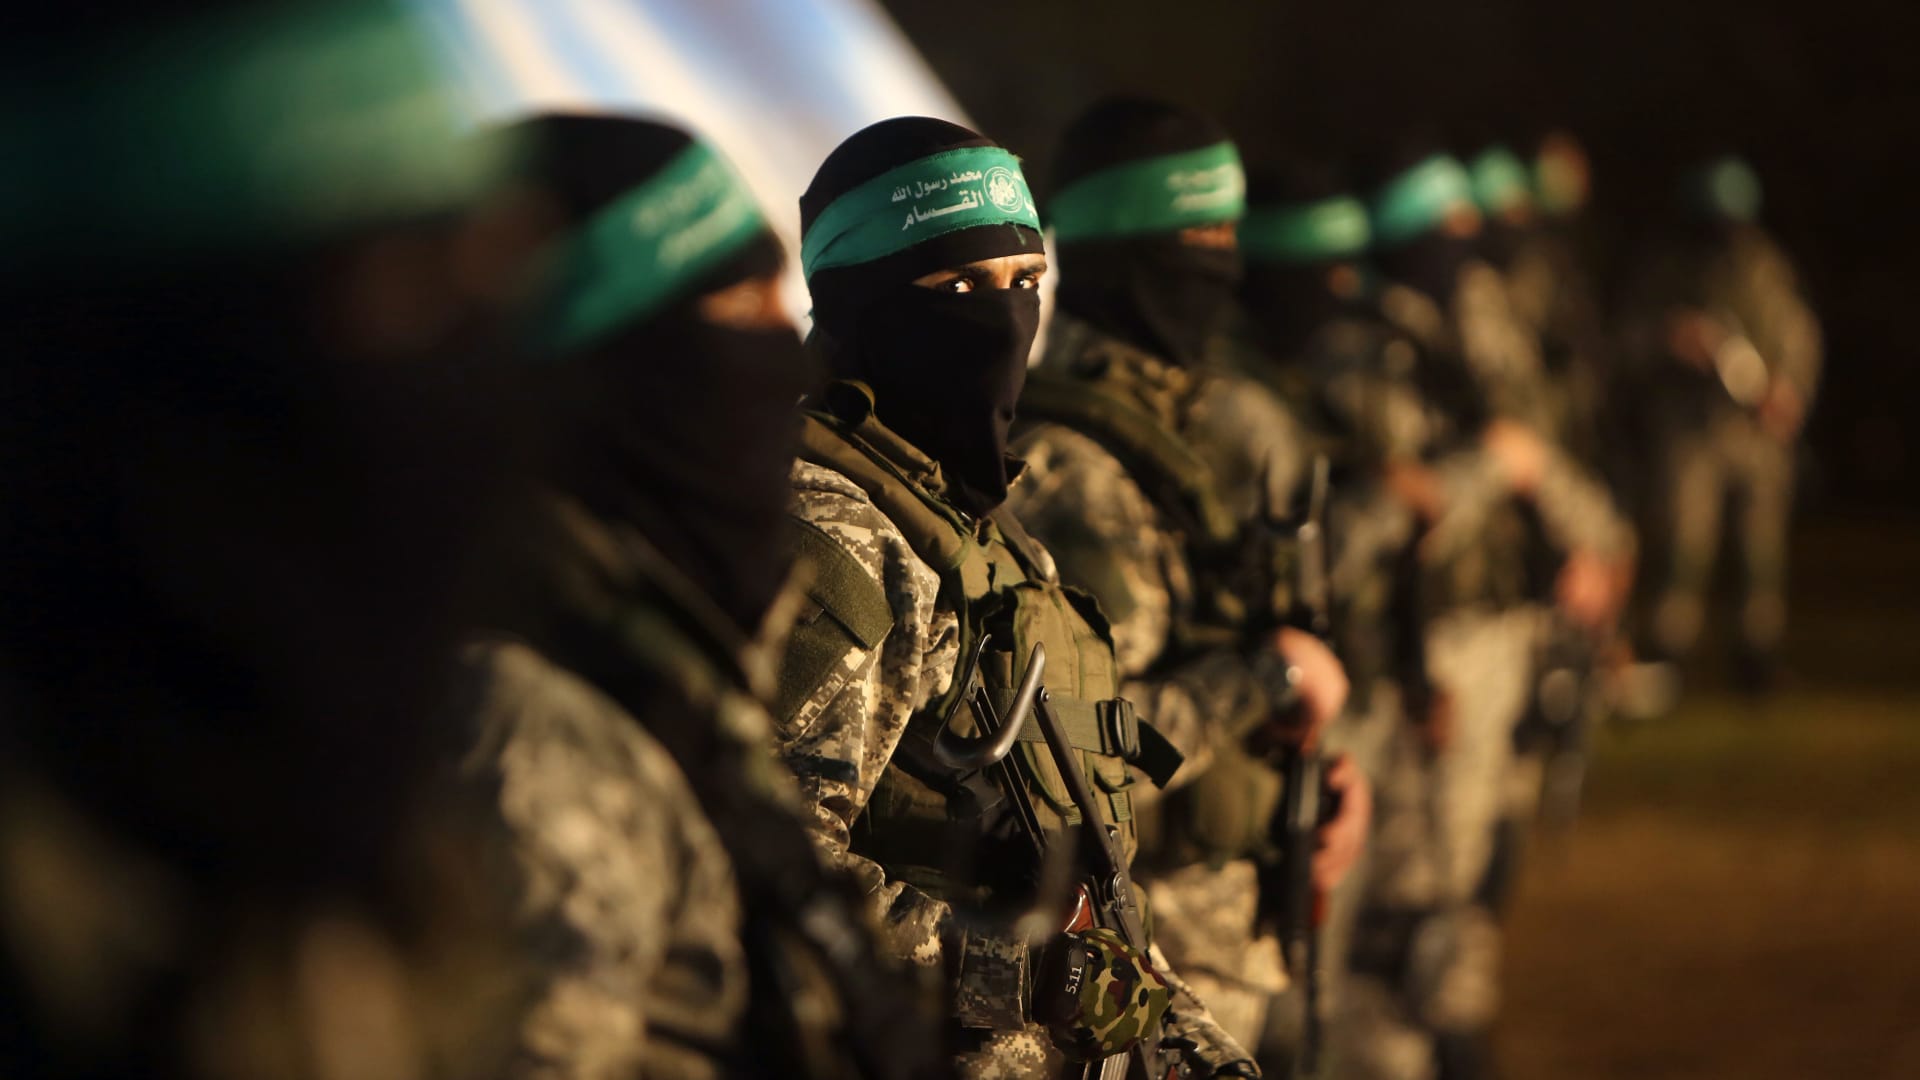 تهديد حماس بقتل الرهائن وترقب غزو بري إسرائيلي بعد "الحصار الكامل".. إليك آخر تطورات "طوفان الأقصى"